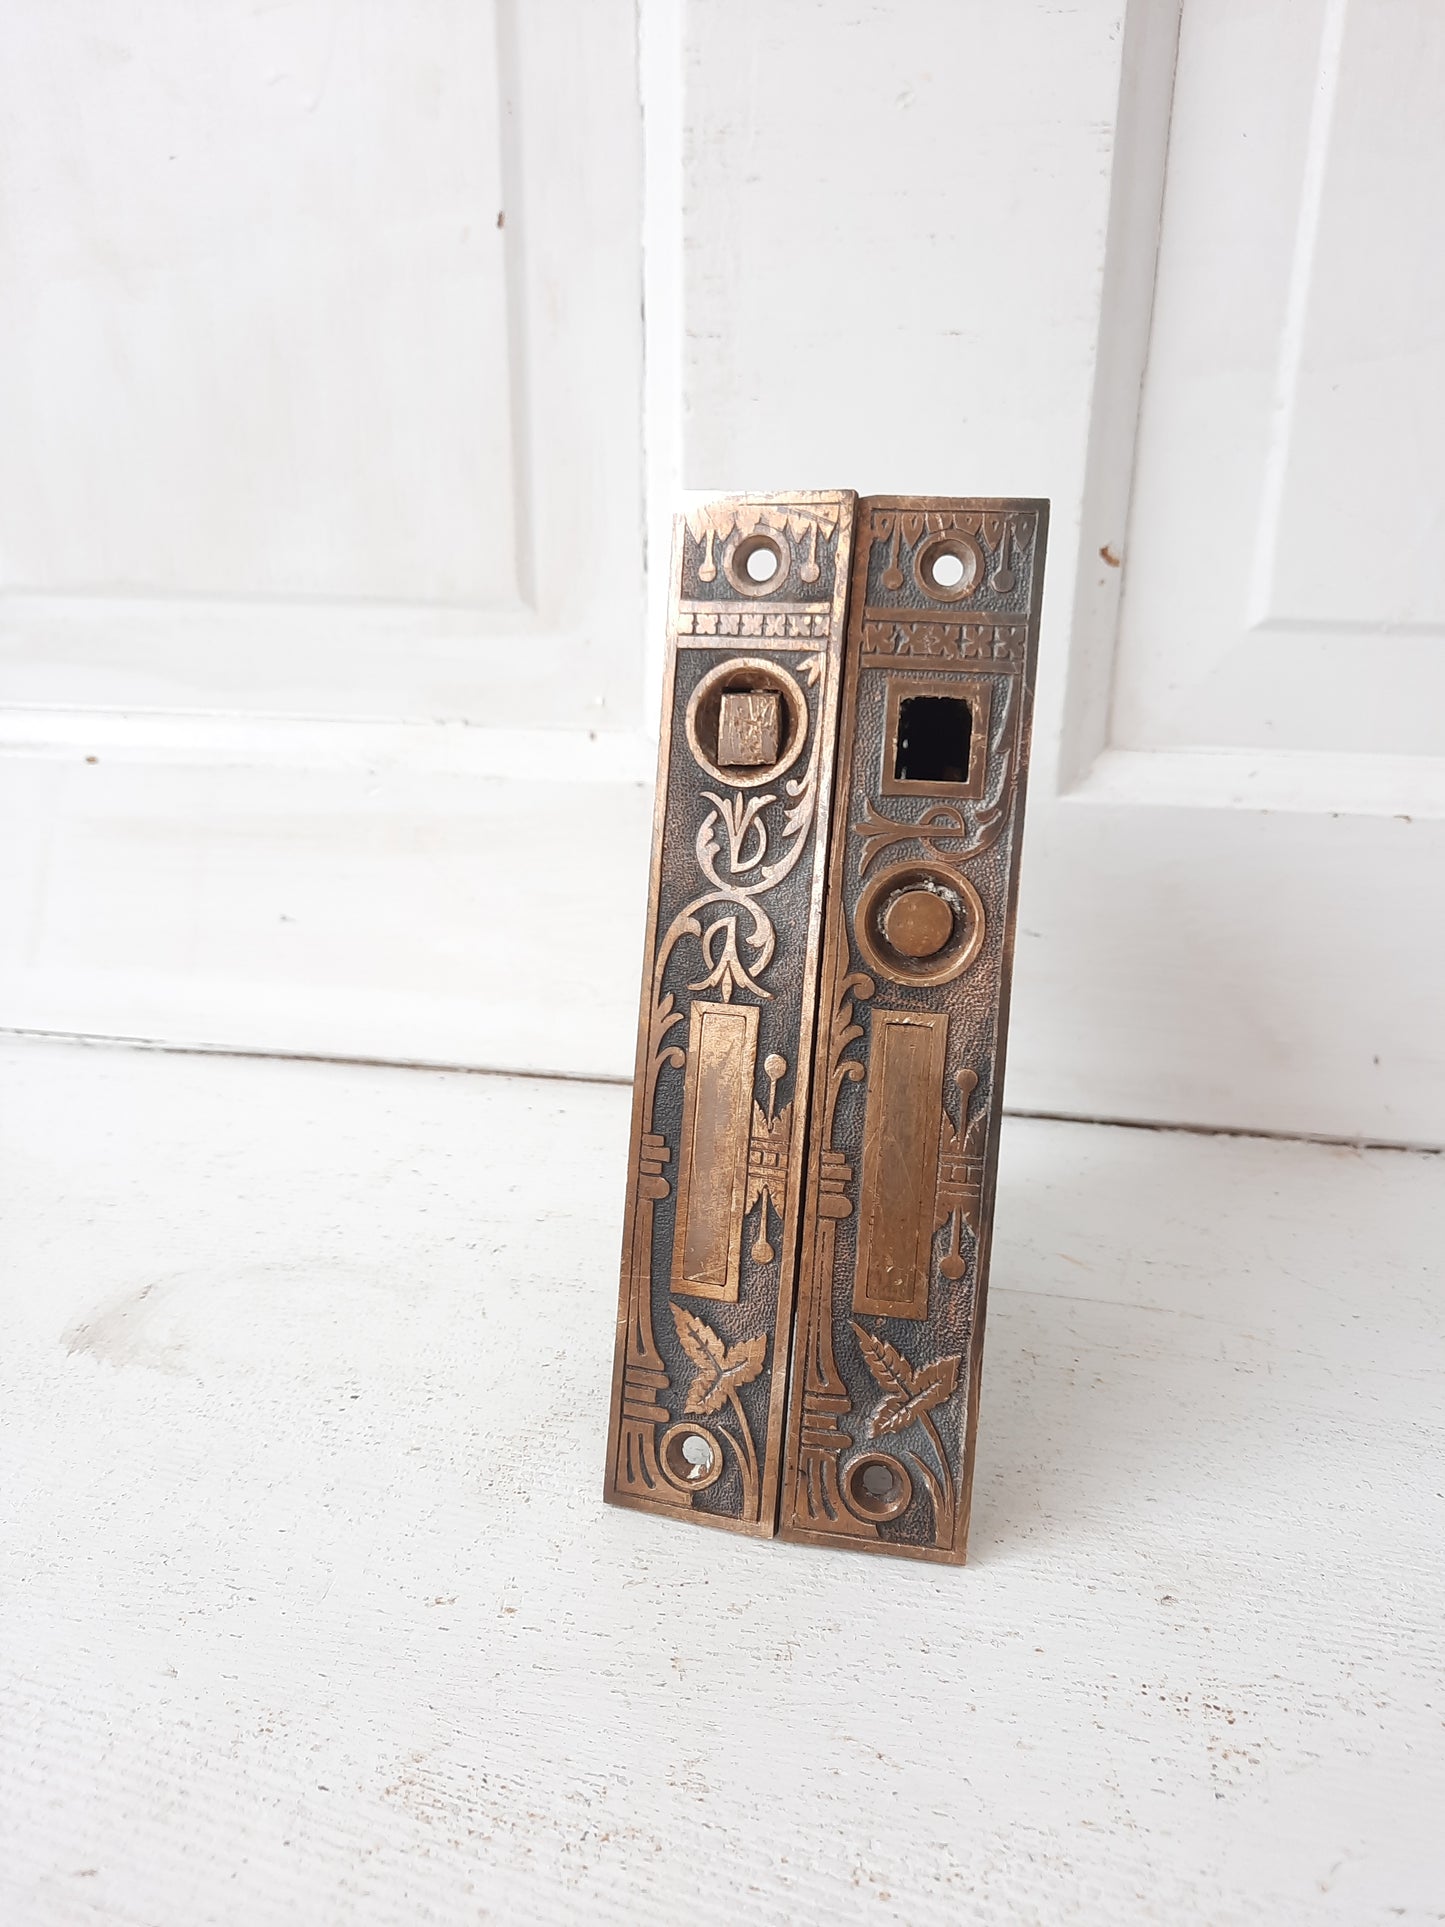 Pair of Ornate Antique Pocket Door Mortise Lock, Double Rolling Door Lock Working Condition 091611